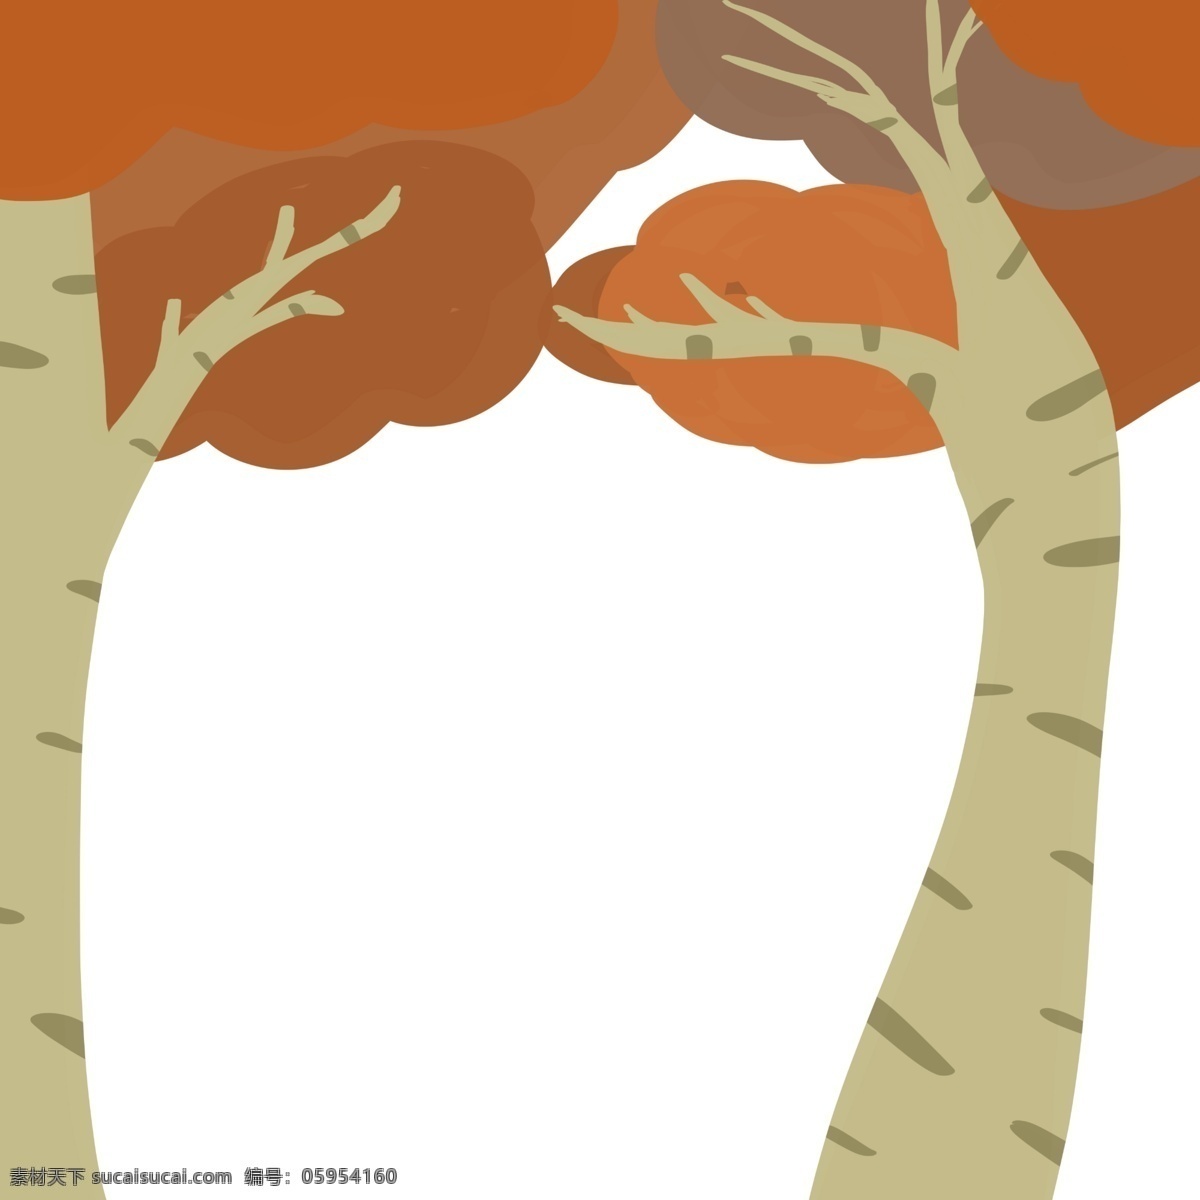 树木 异形 手绘 元素 简单 可爱 简约 棕色 卡通 卡通树木 异型 简约树木 秋天 棕色树木 简单树木 简约卡通